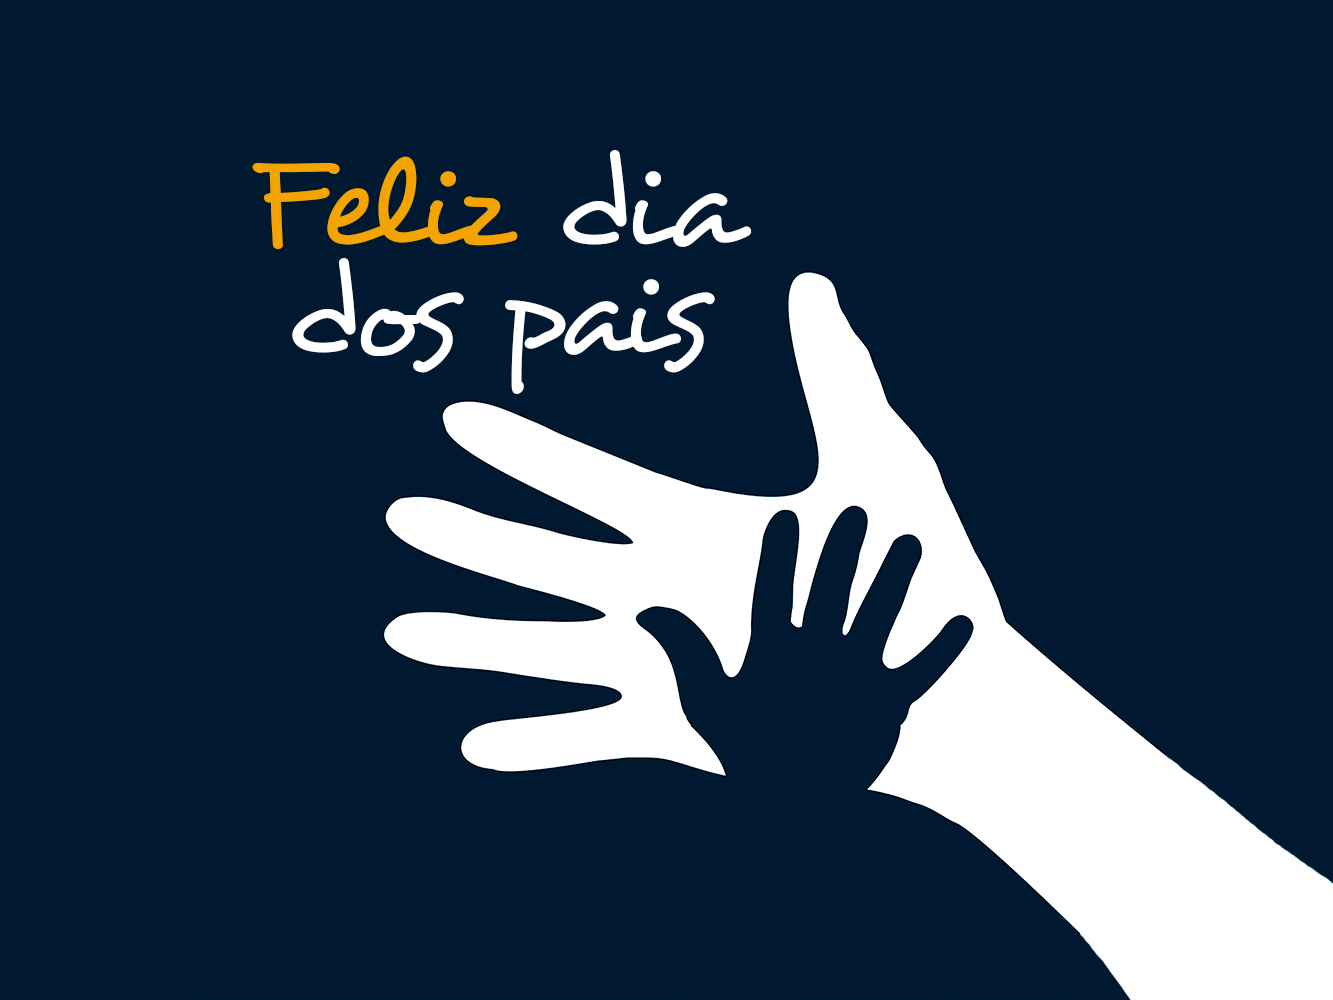 2º domingo de agosto é a data reservada no Brasil para homenagear os pais. A Comemoração na maioria dos países é em junho